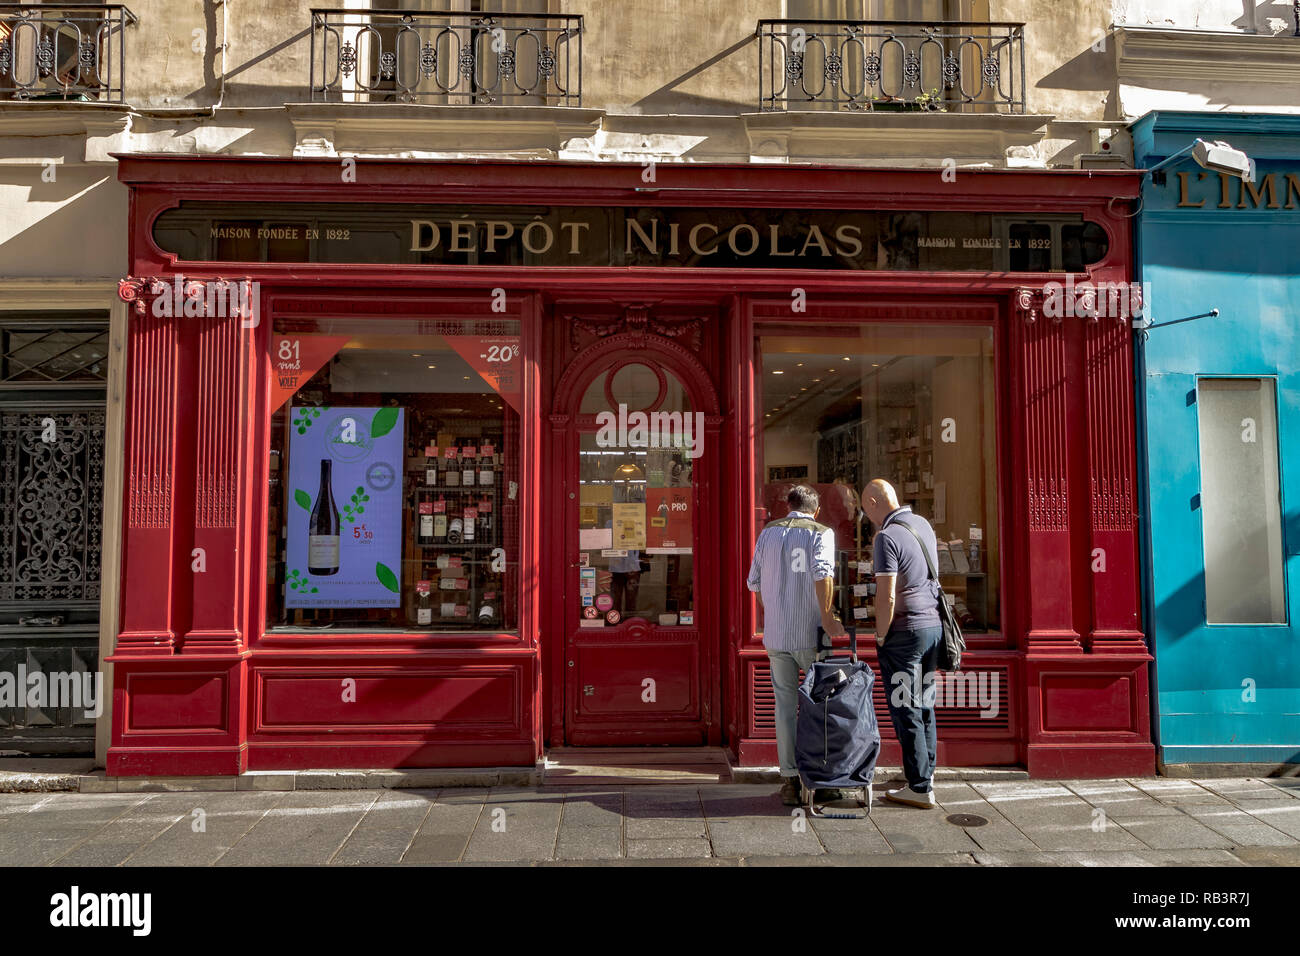 Deux personnes à la recherche de la fenêtre de depot Nicolas, marchands de vin boutique sur rue Saint-Louis en l'Île, Paris, France Banque D'Images